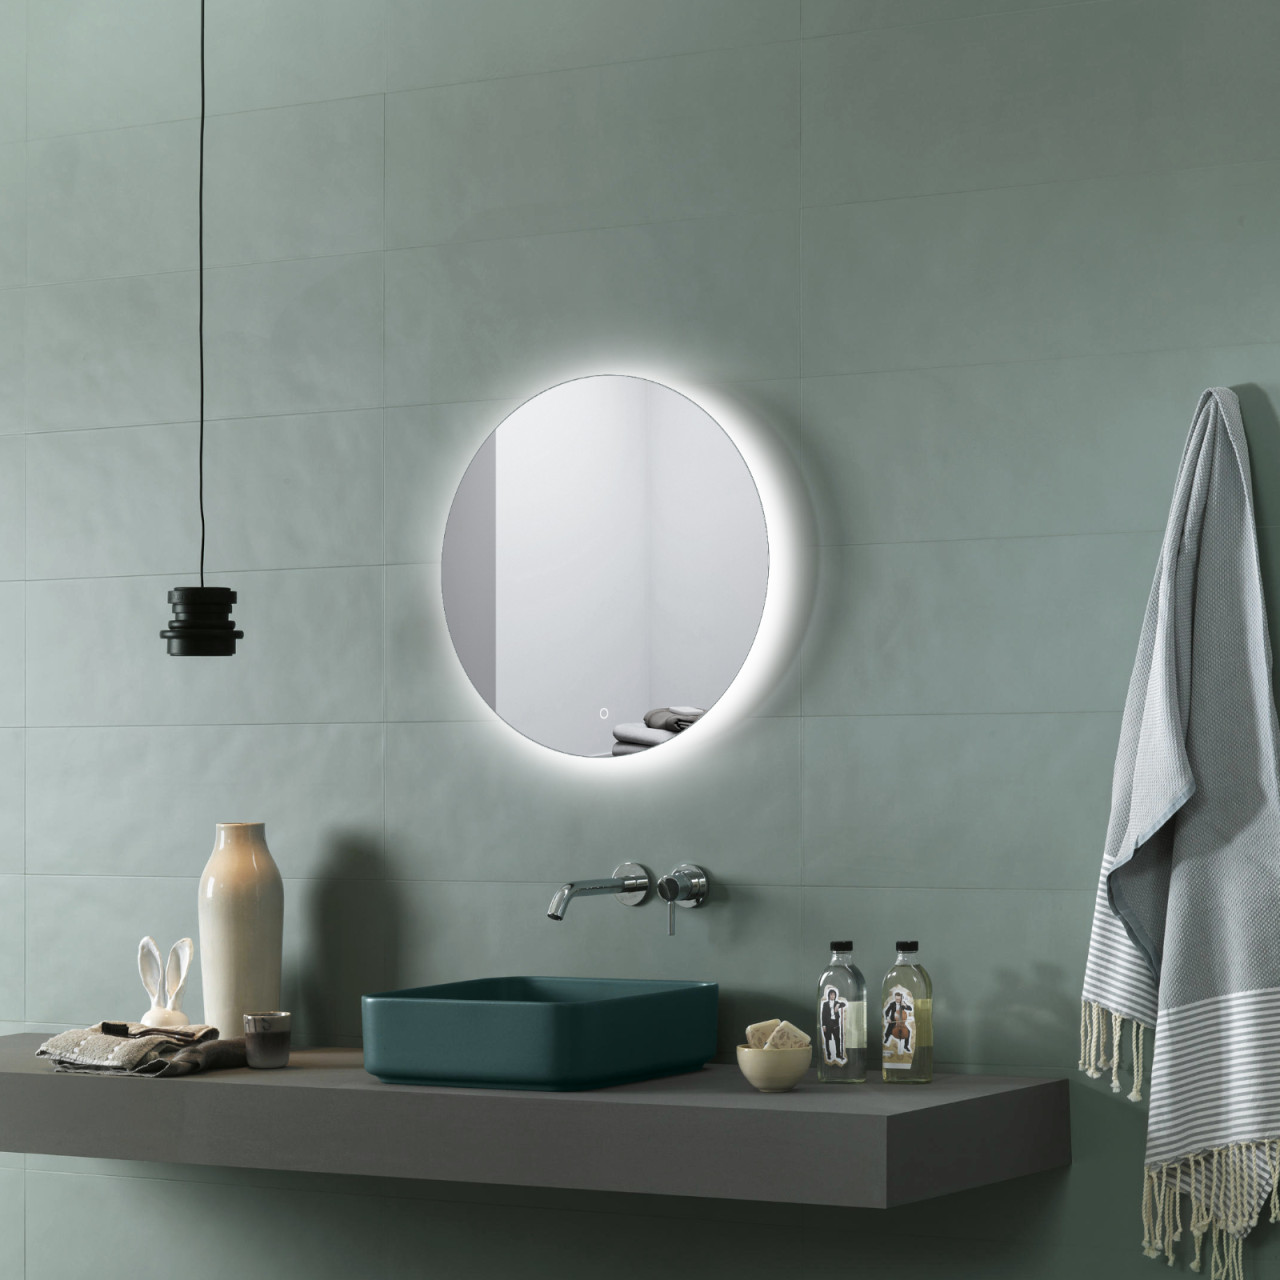 Specchio bagno tondo retro illuminato a led rotondo da 80 cm luminosissimo